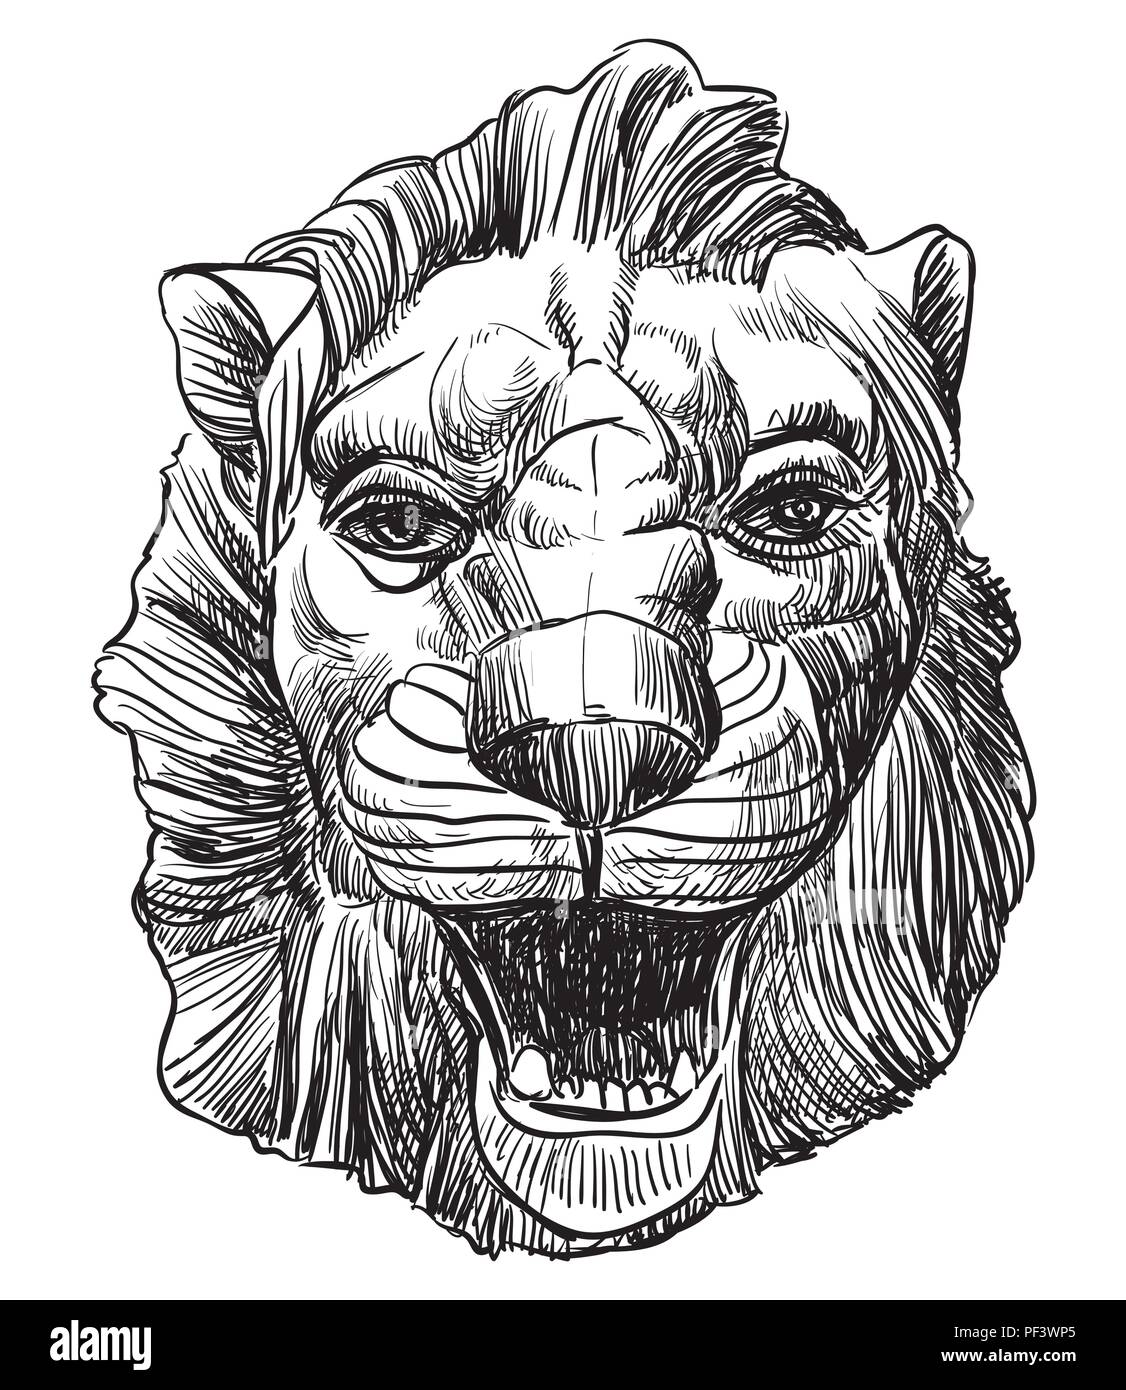 Antiguo relieve, escultura en forma de cabeza de león, vector de dibujo a mano alzada en la ilustración aislada de color negro sobre fondo blanco. Ilustración del Vector